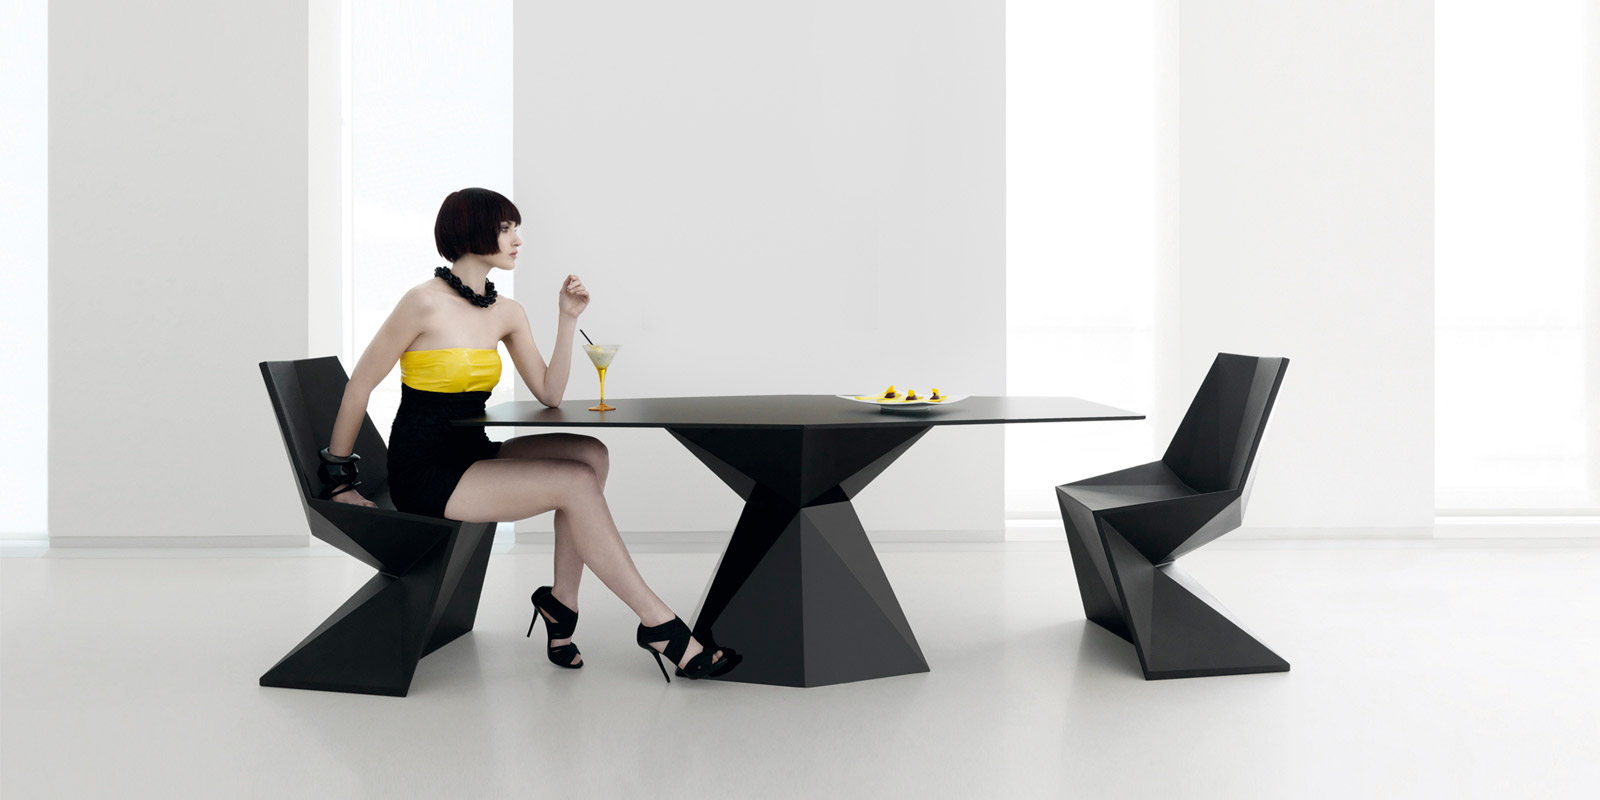 VERTEX/muebles-exterior-diseño-mesa-silla-comedorexterior-vertex-karimrashid-vondom_3_.jpg